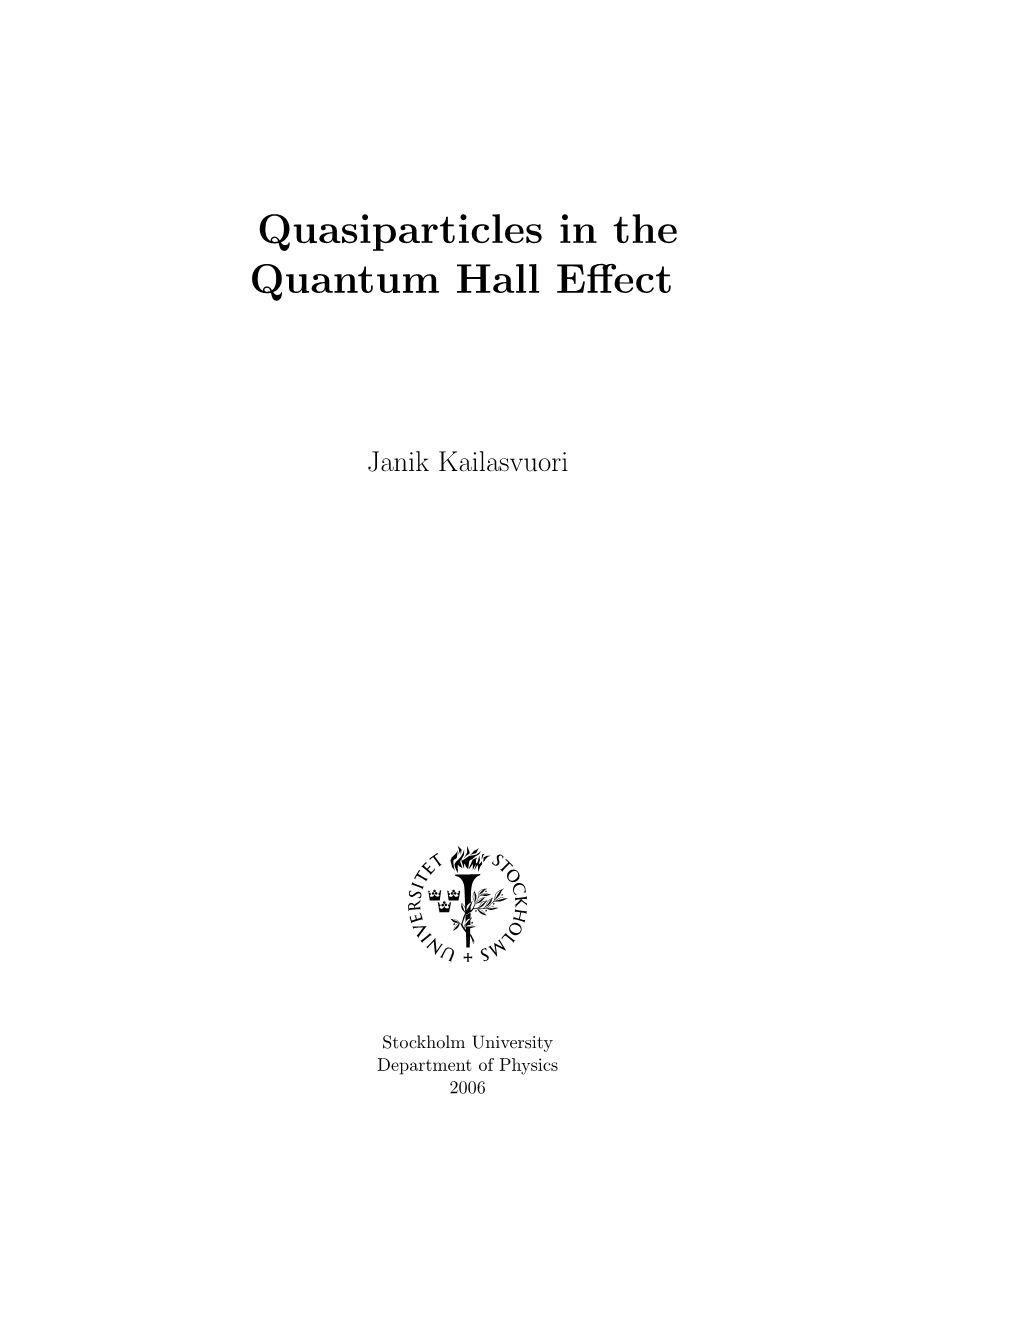 Quasiparticles in the Quantum Hall Effect